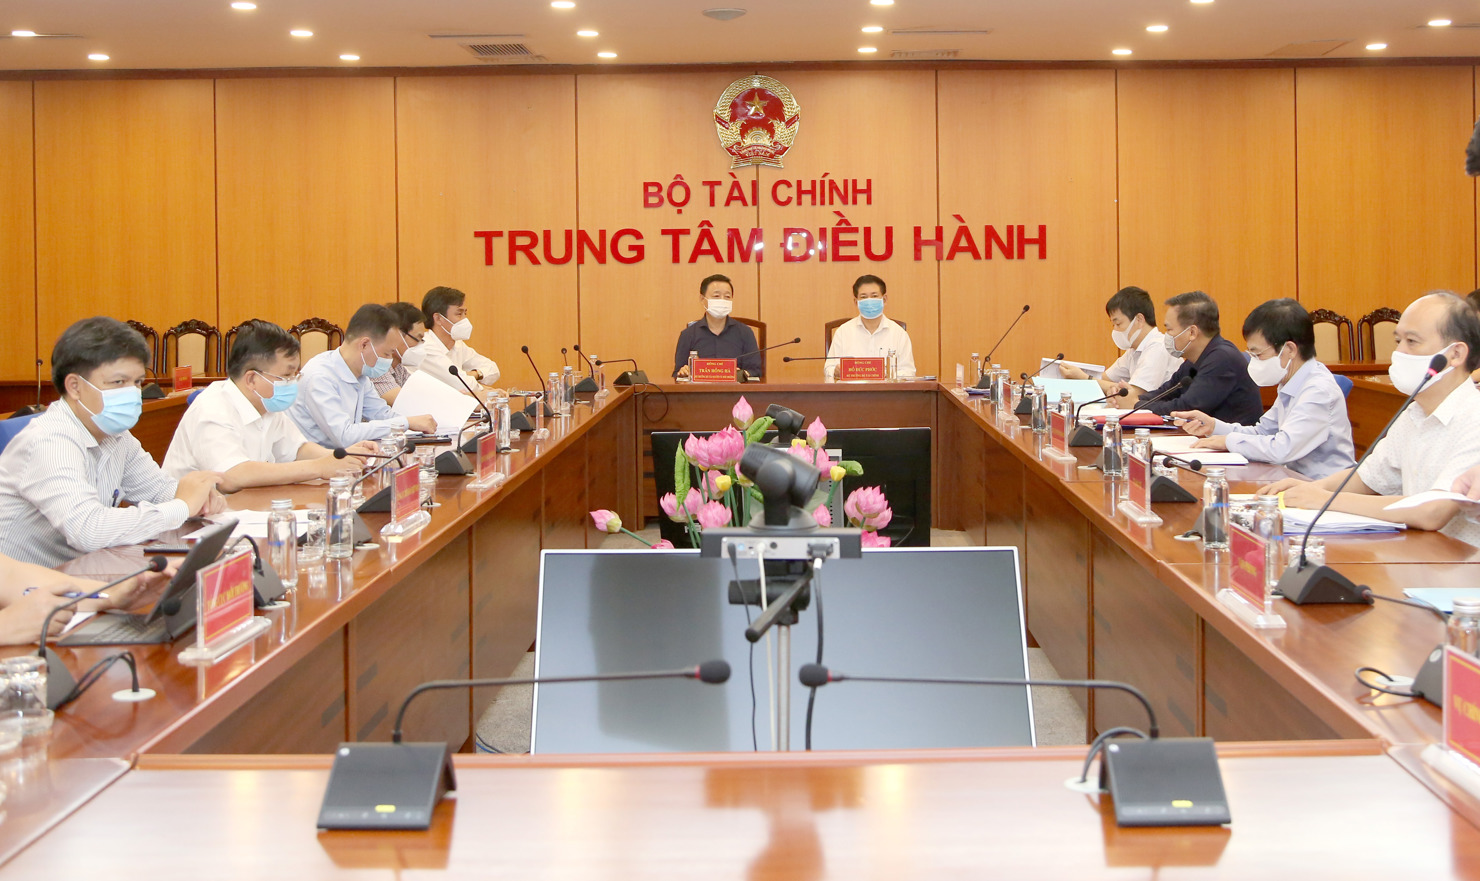 Bộ trưởng Bộ Tài chính Hồ Đức Phớc và Bộ trưởng Bộ Tài nguyên và Môi trường Trần Hồng Hà chủ trì buổi làm việc.